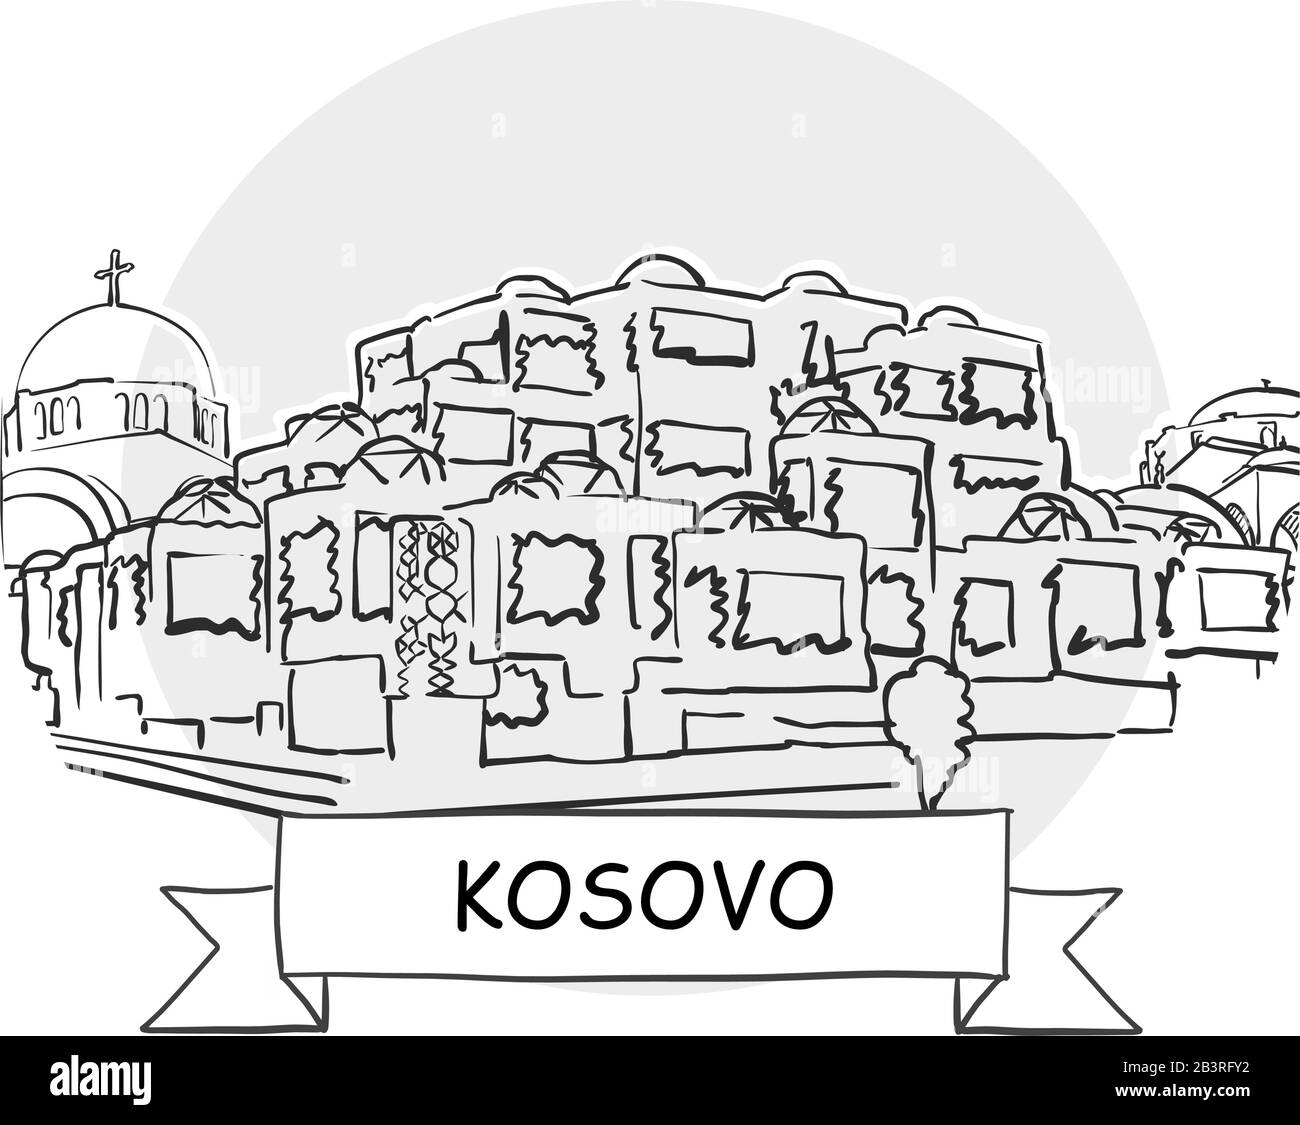 Symbole Vectoriel Urbain Dessiné À La Main Au Kosovo. Illustration De L'Art De La Ligne Noire Avec Ruban Et Titre. Illustration de Vecteur